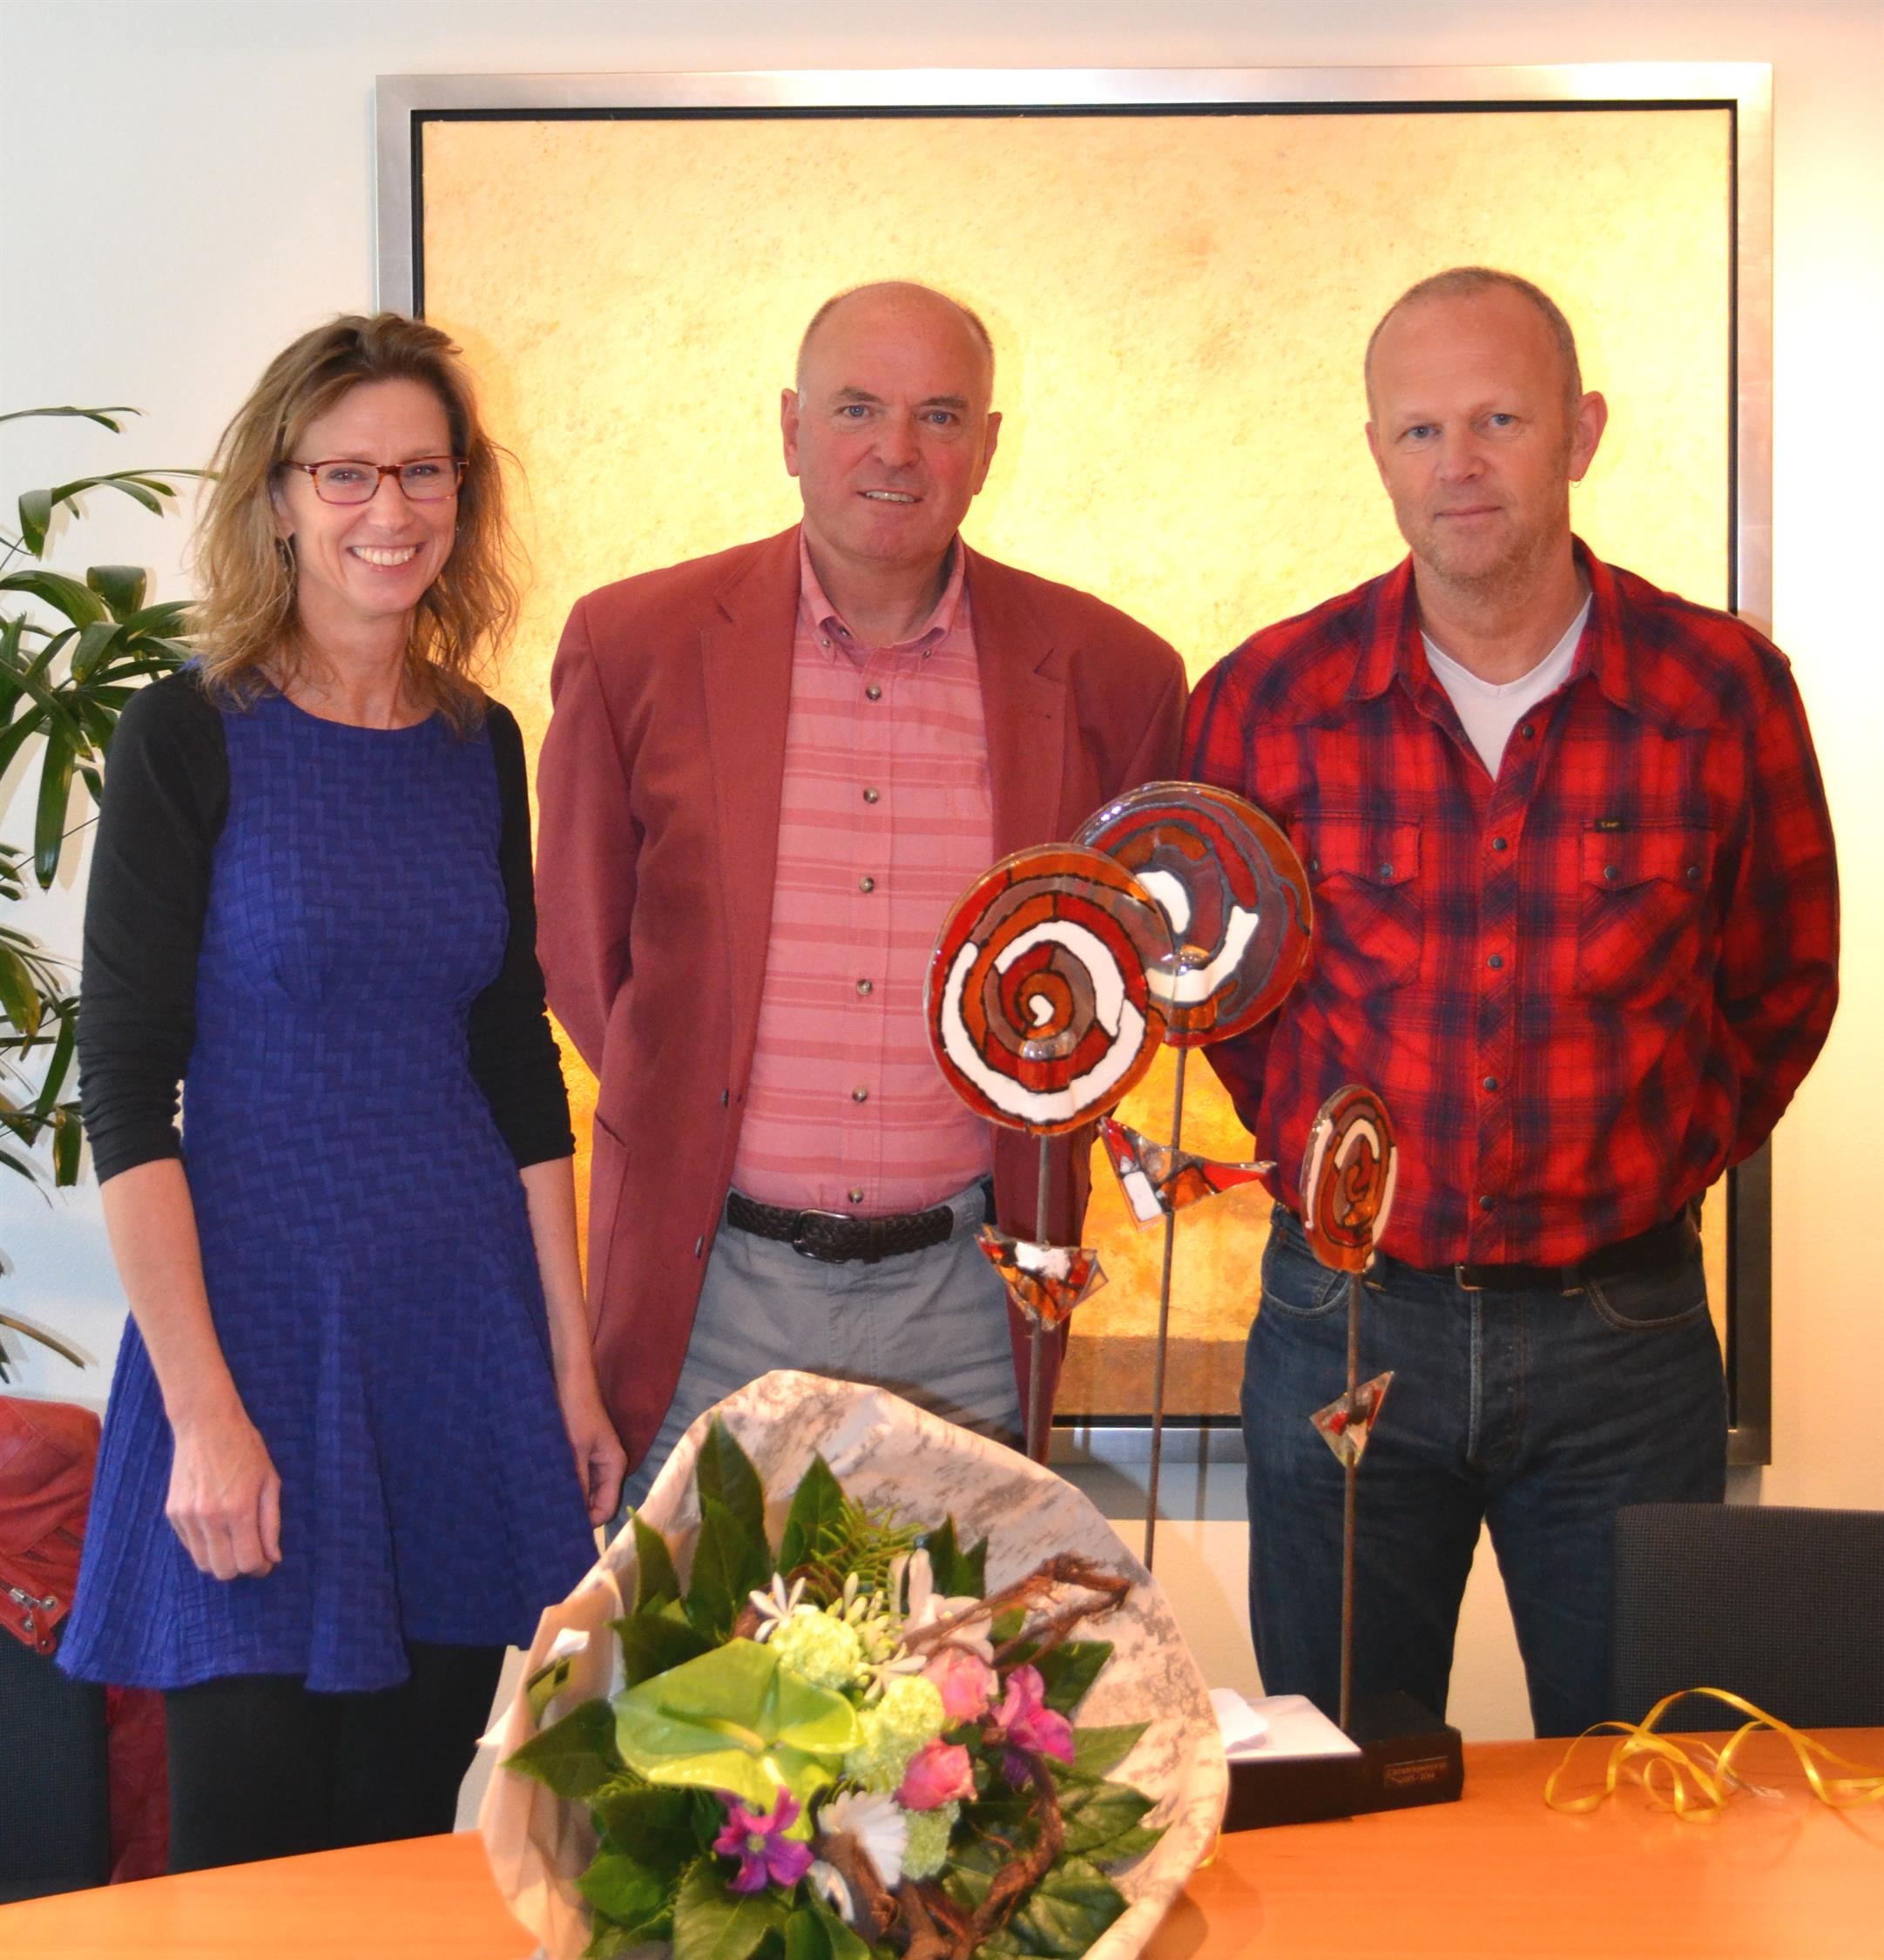 Bloemen, een oorkonde en een fraai werkstuk van een kunstenaar van ArtOro, werden dankbaar in ontvangst genomen door de Disney-ambassadeurs van de afdeling, Annebeth Fondse-Kaag en Lodewijk van Asten.